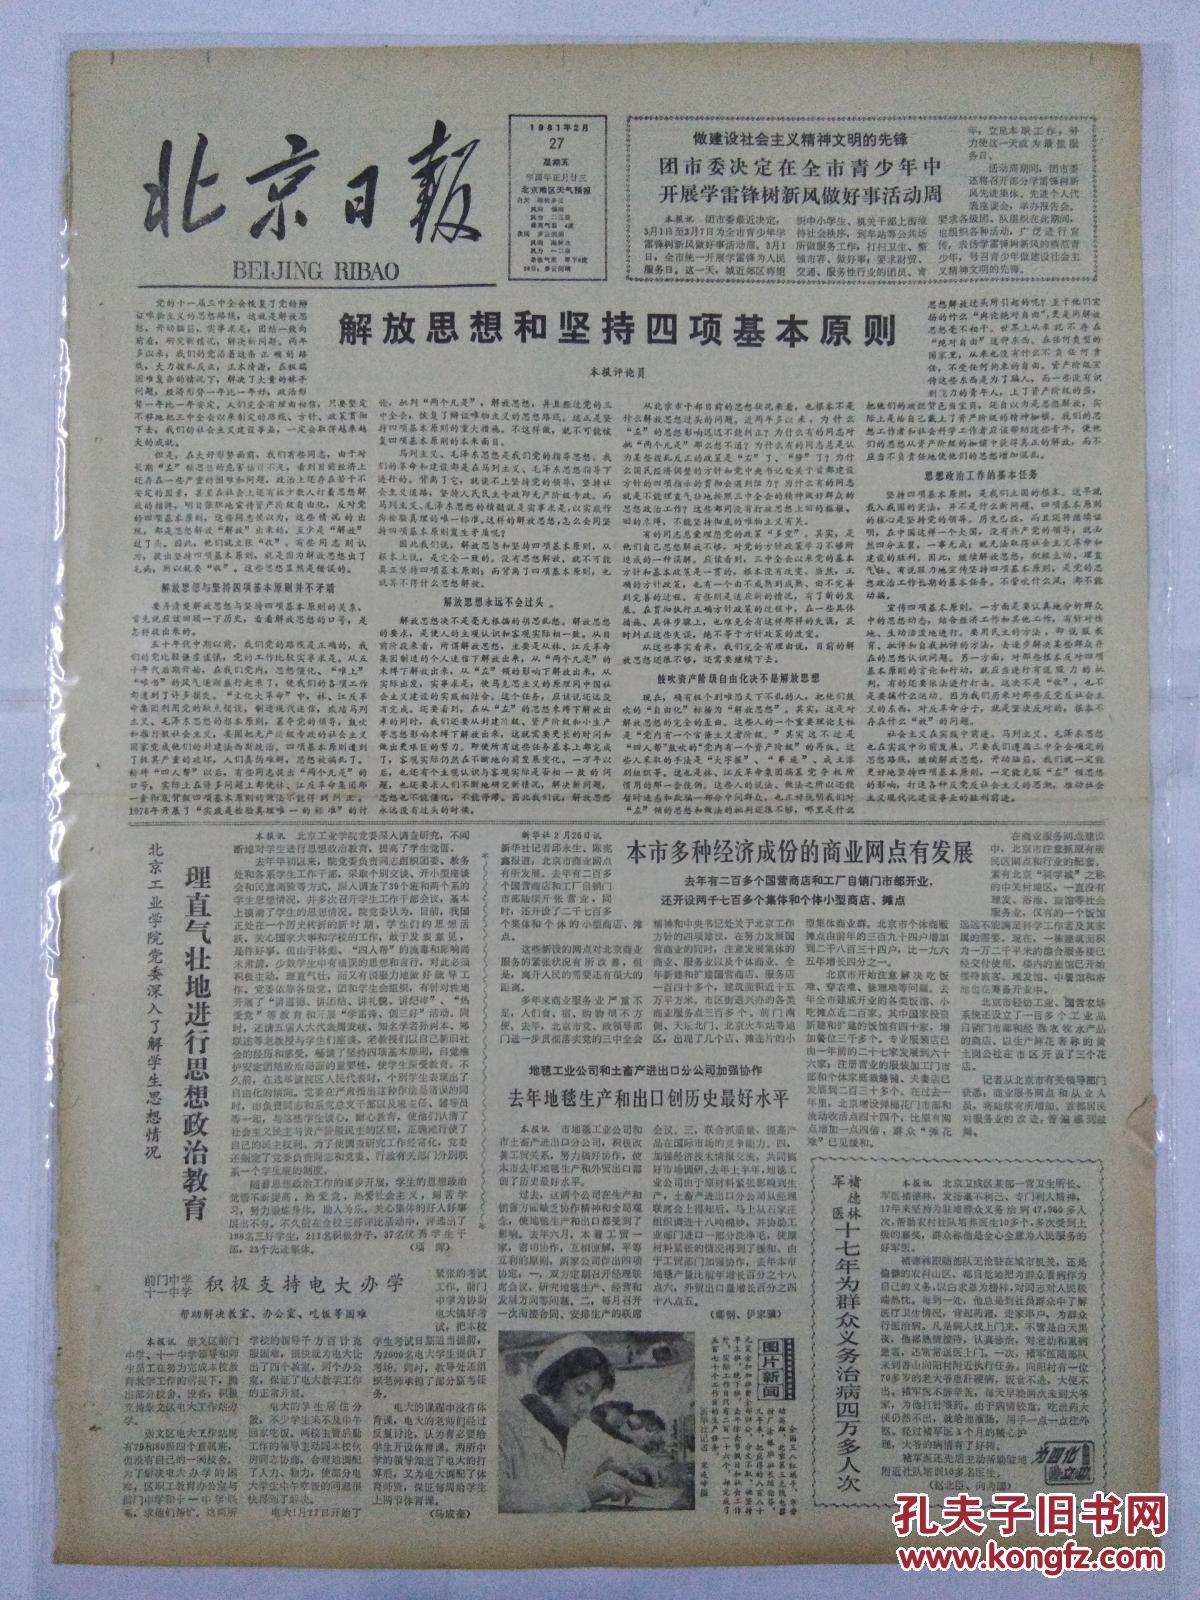 北京日报1981年2月27日解放思想和坚持四项基本原则;理直气壮地进行